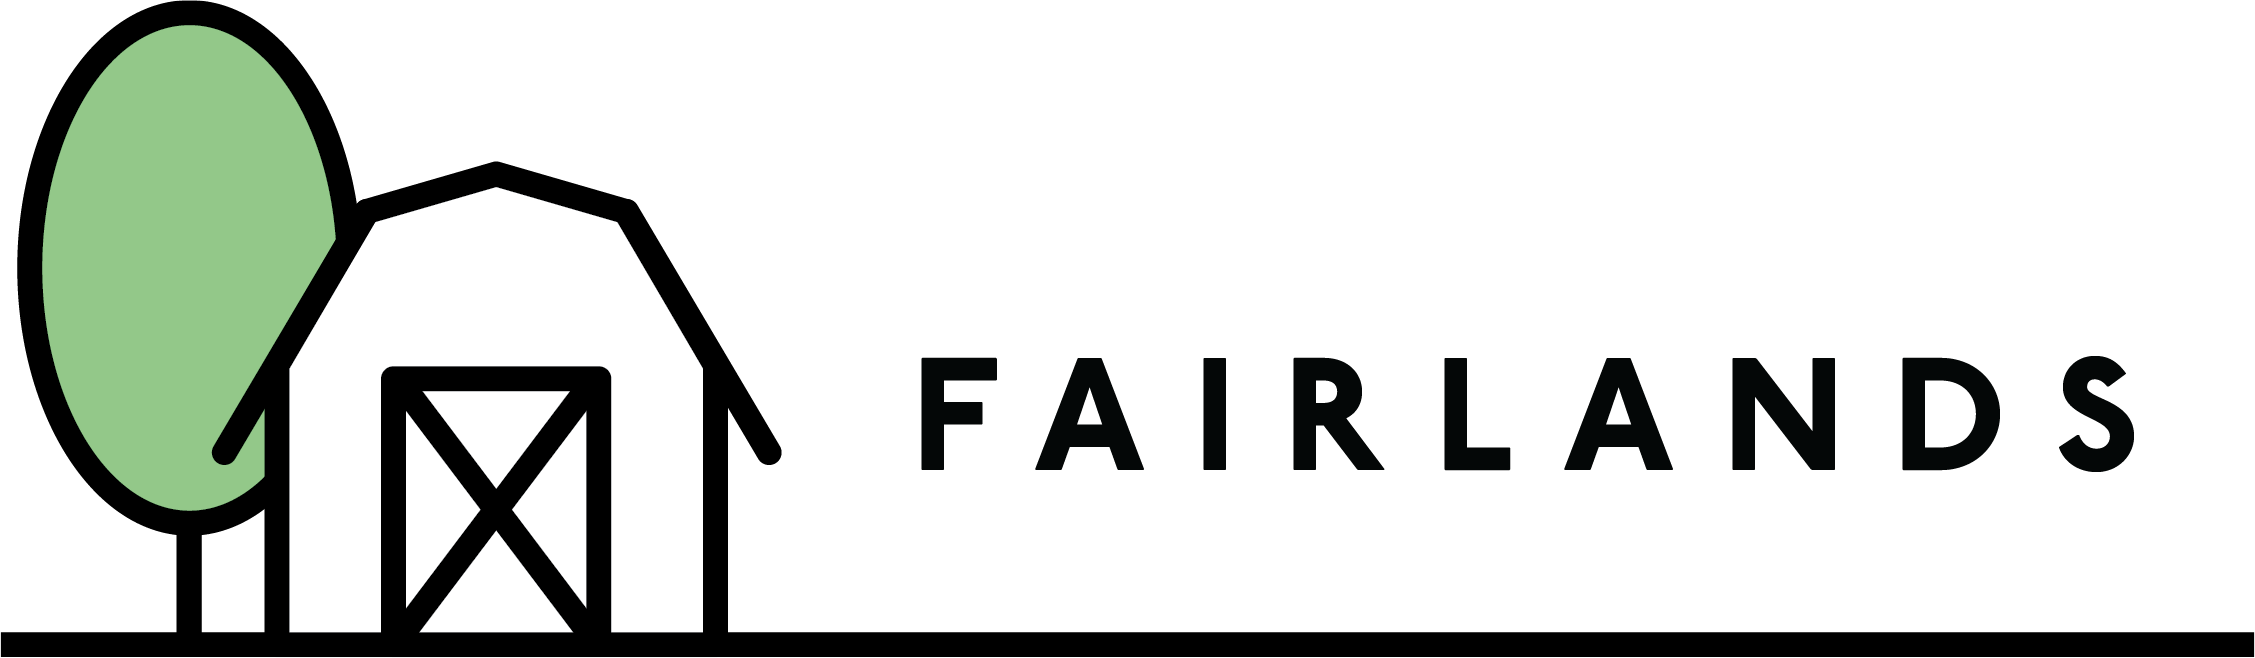 fairlands logo